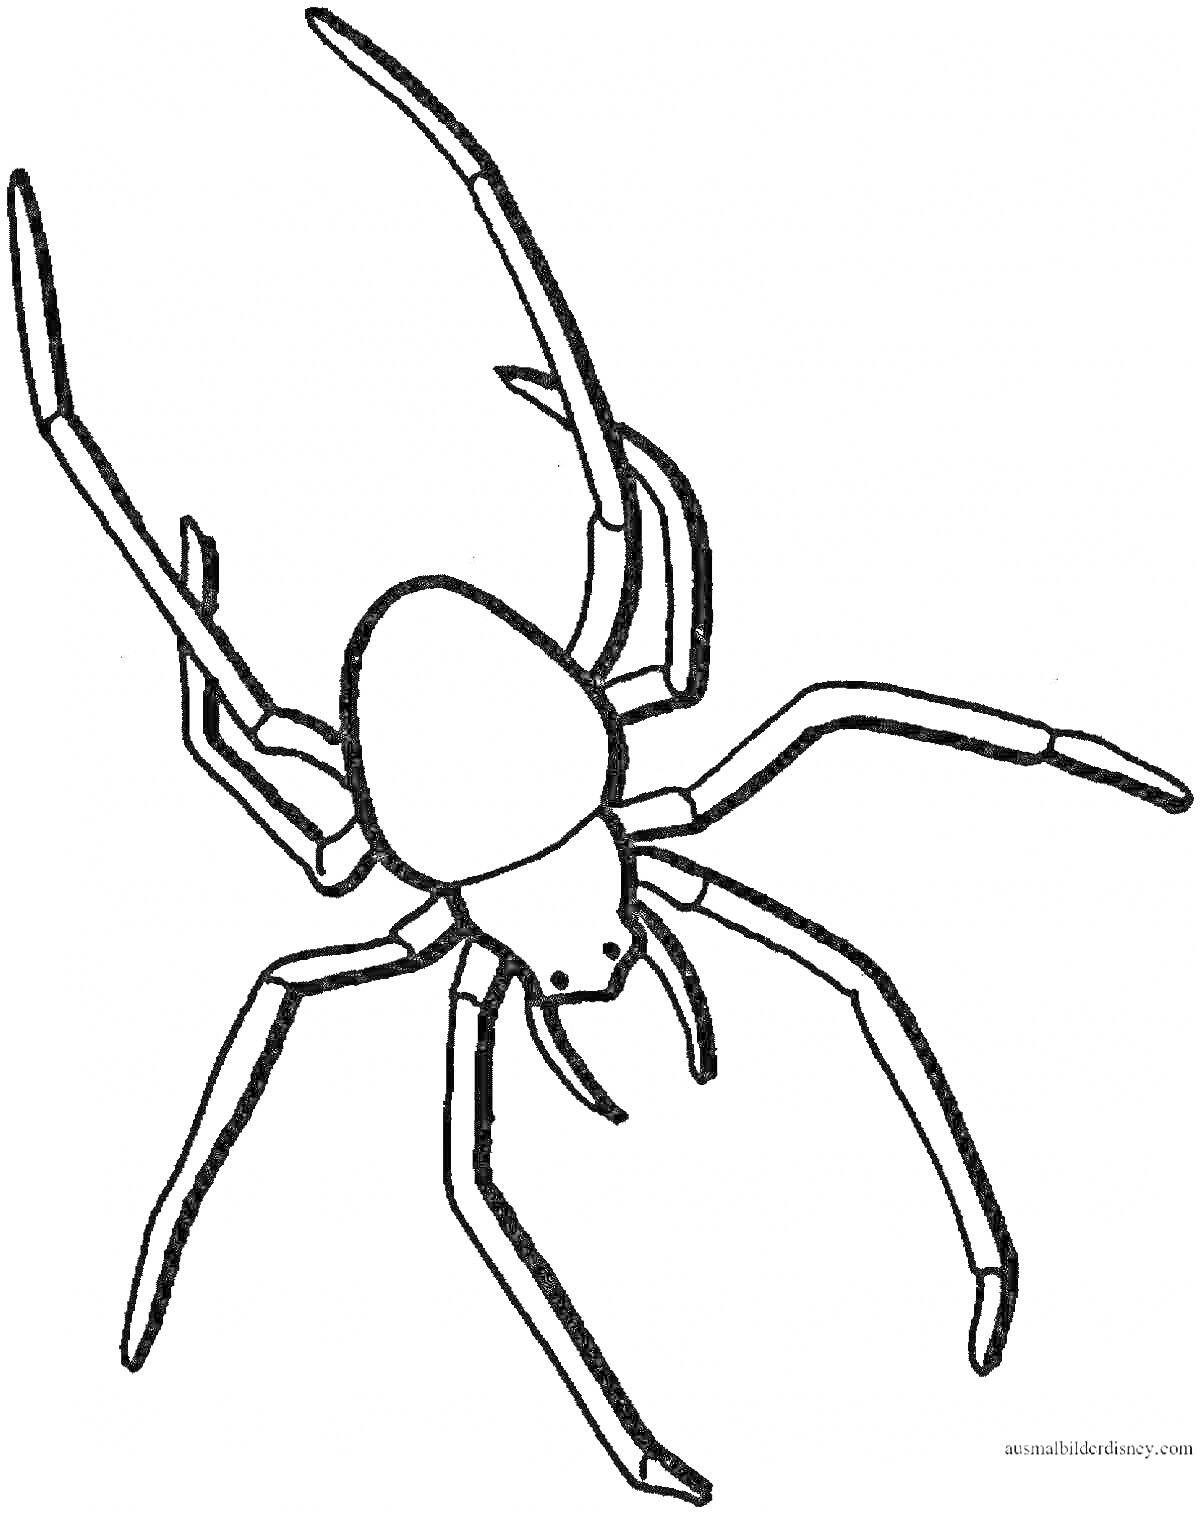 Раскраска Черная вдова паук с длинными лапами и крупным брюшком